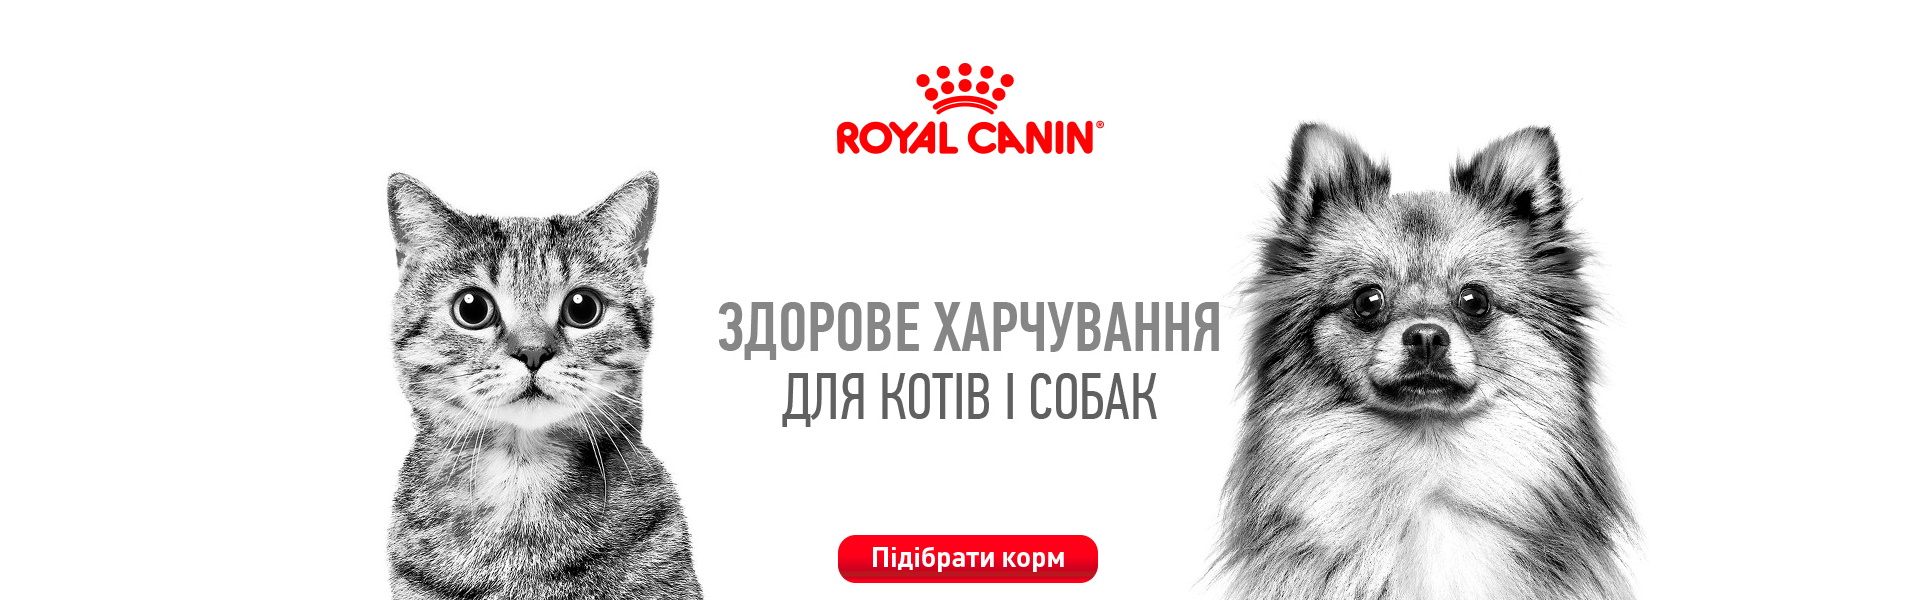 0001:Royal Canin имиджевый баннер